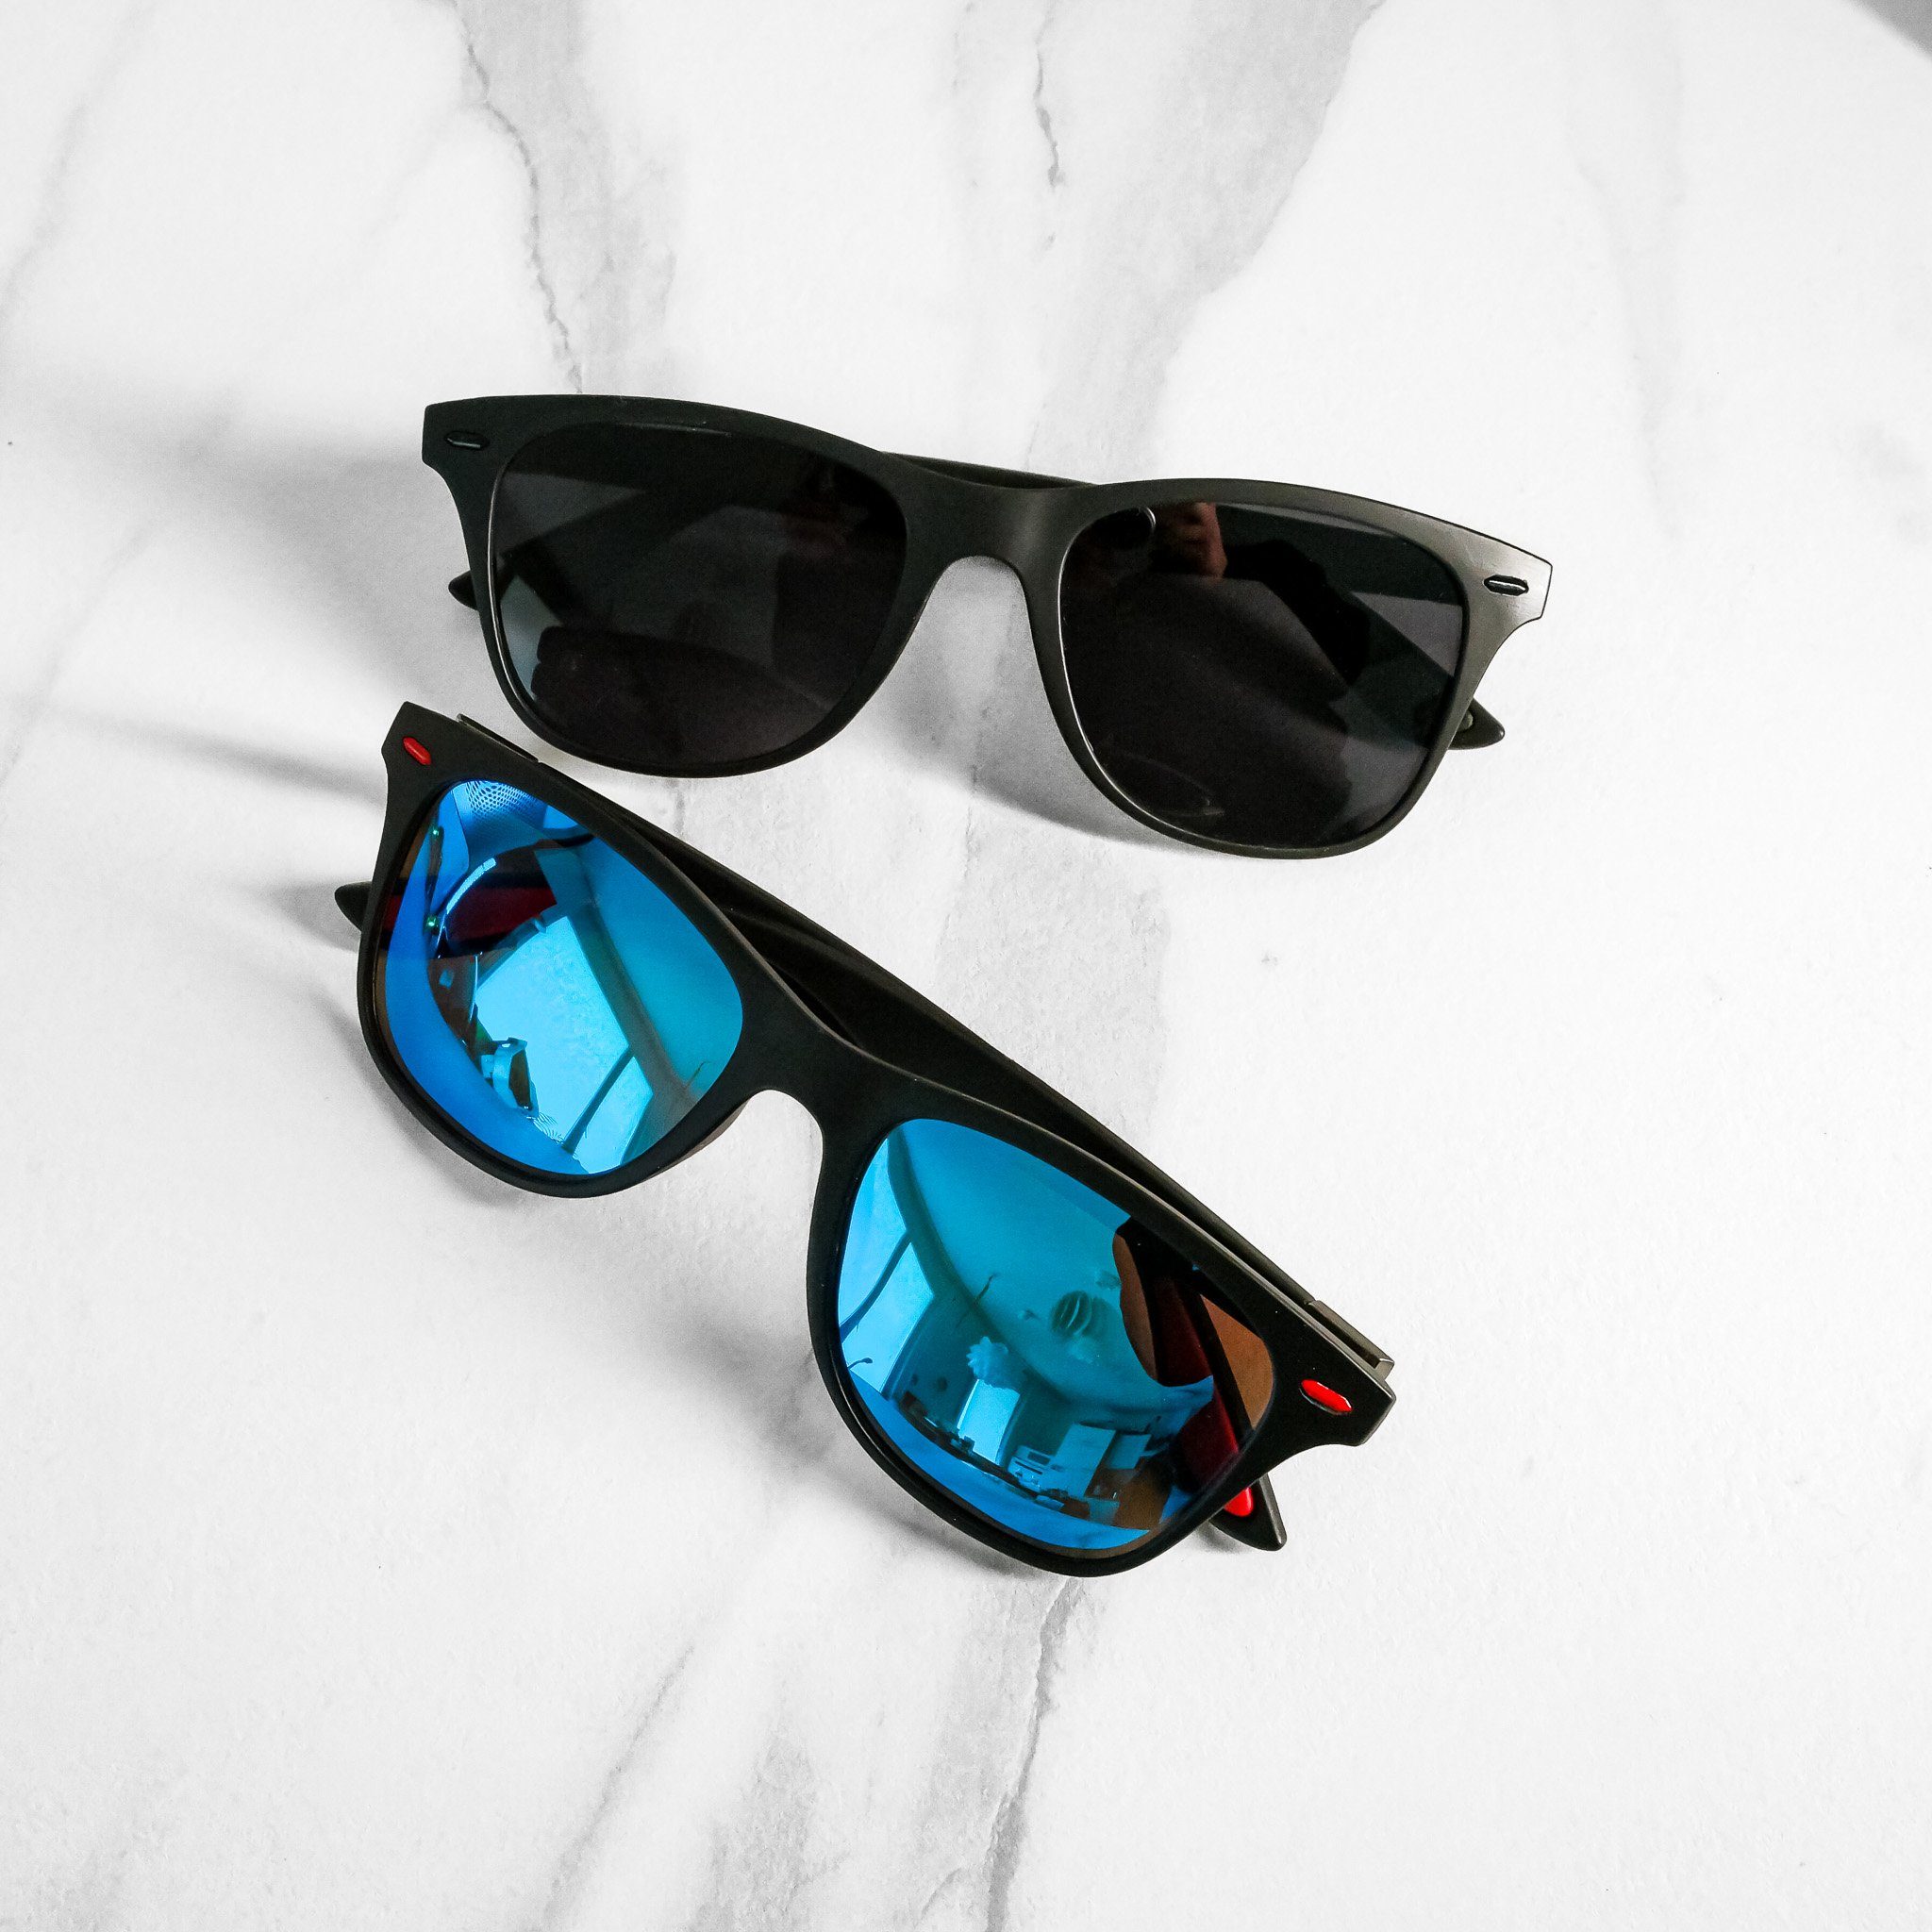 Farben Brille Blau Herren Sonnenbrille Unisex salazar.plus Schwarz Rechteckig 2 Damen Klassisch